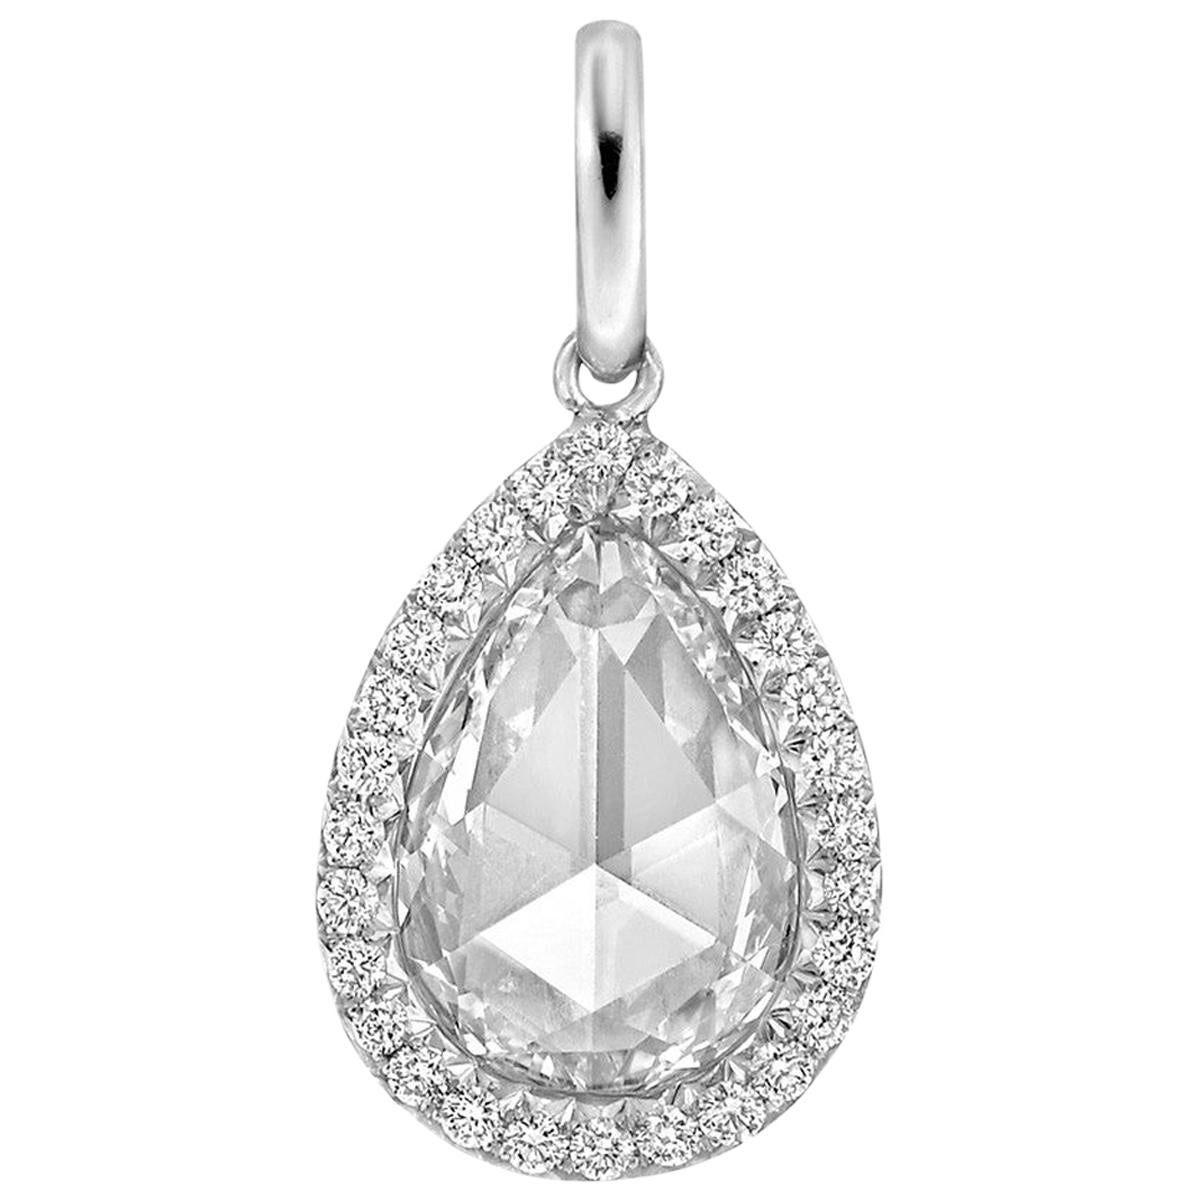 1.51 Carat Pear Rose-Cut Diamond "Oriana" Pendant